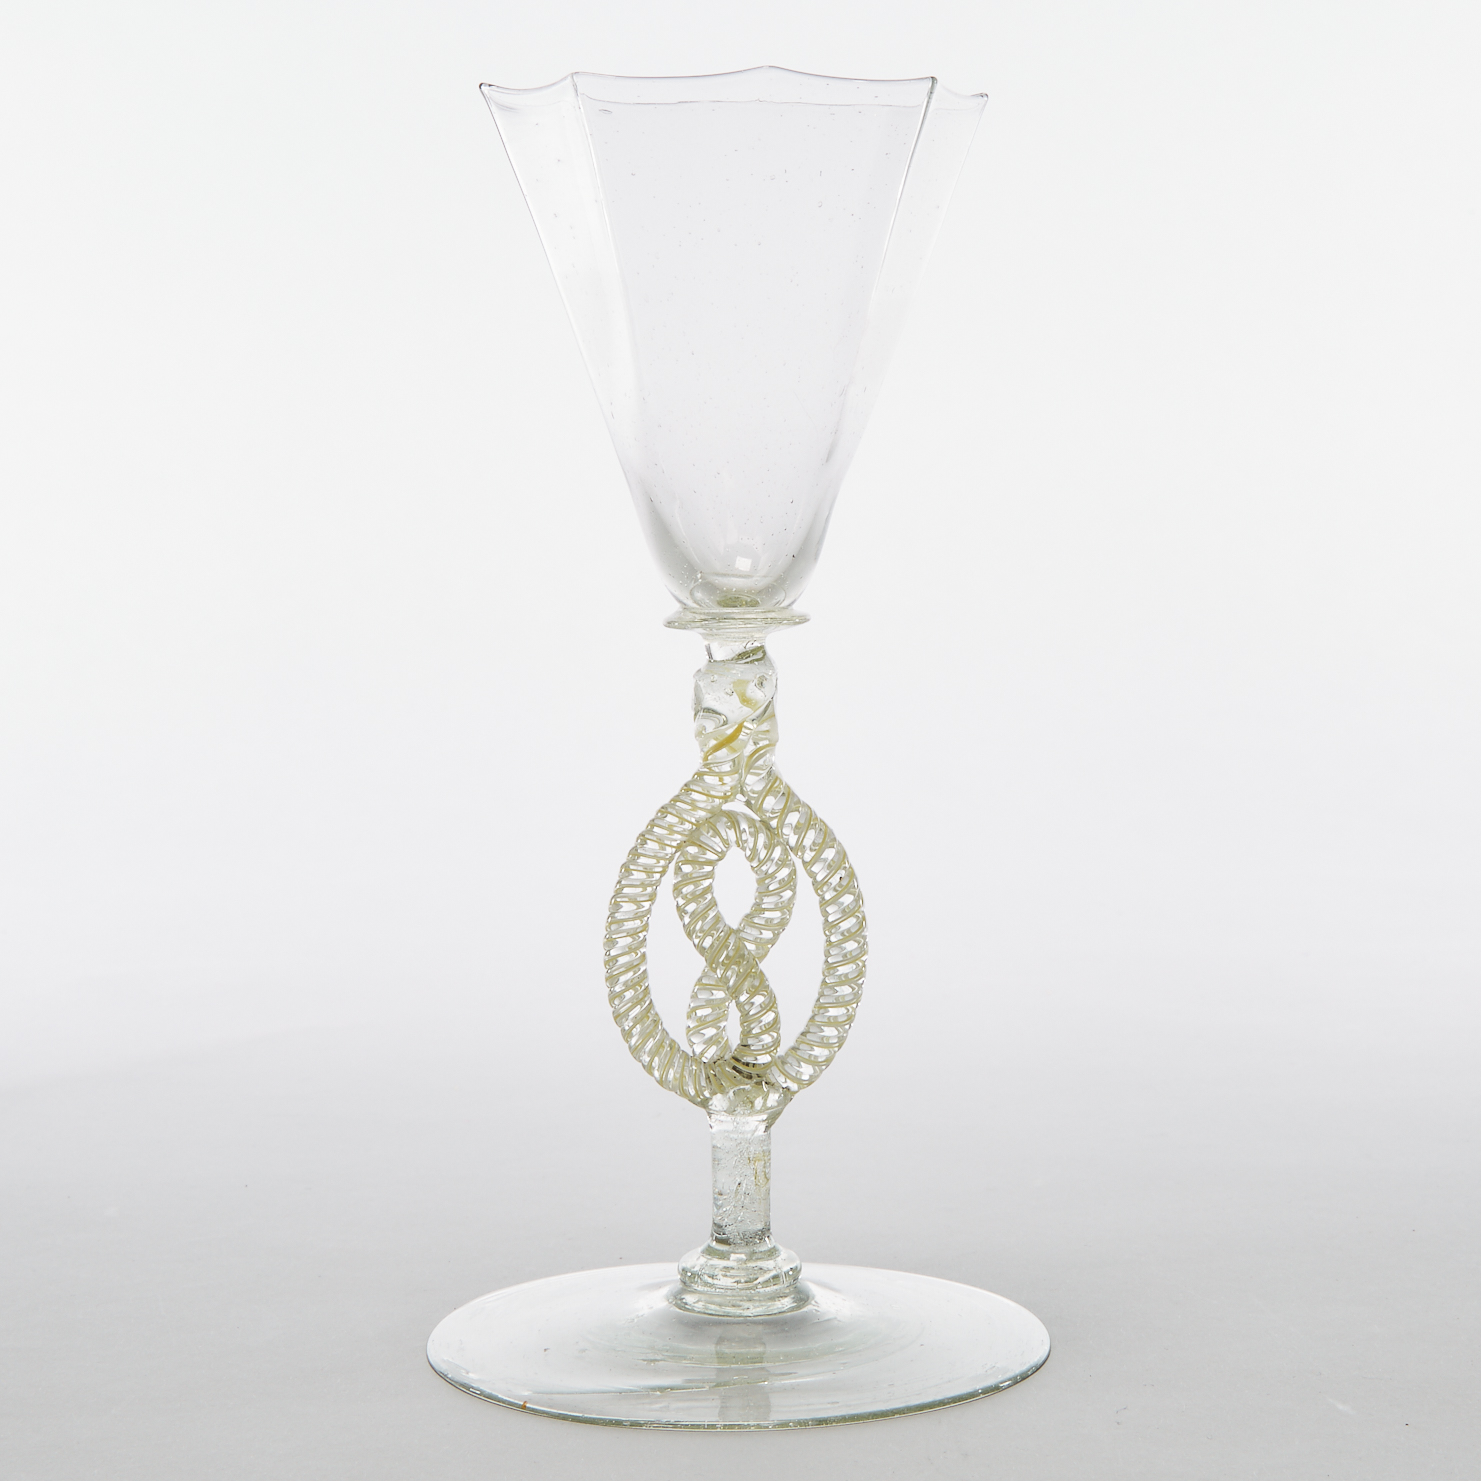 Façon de Venise Wine Glass, 17th century